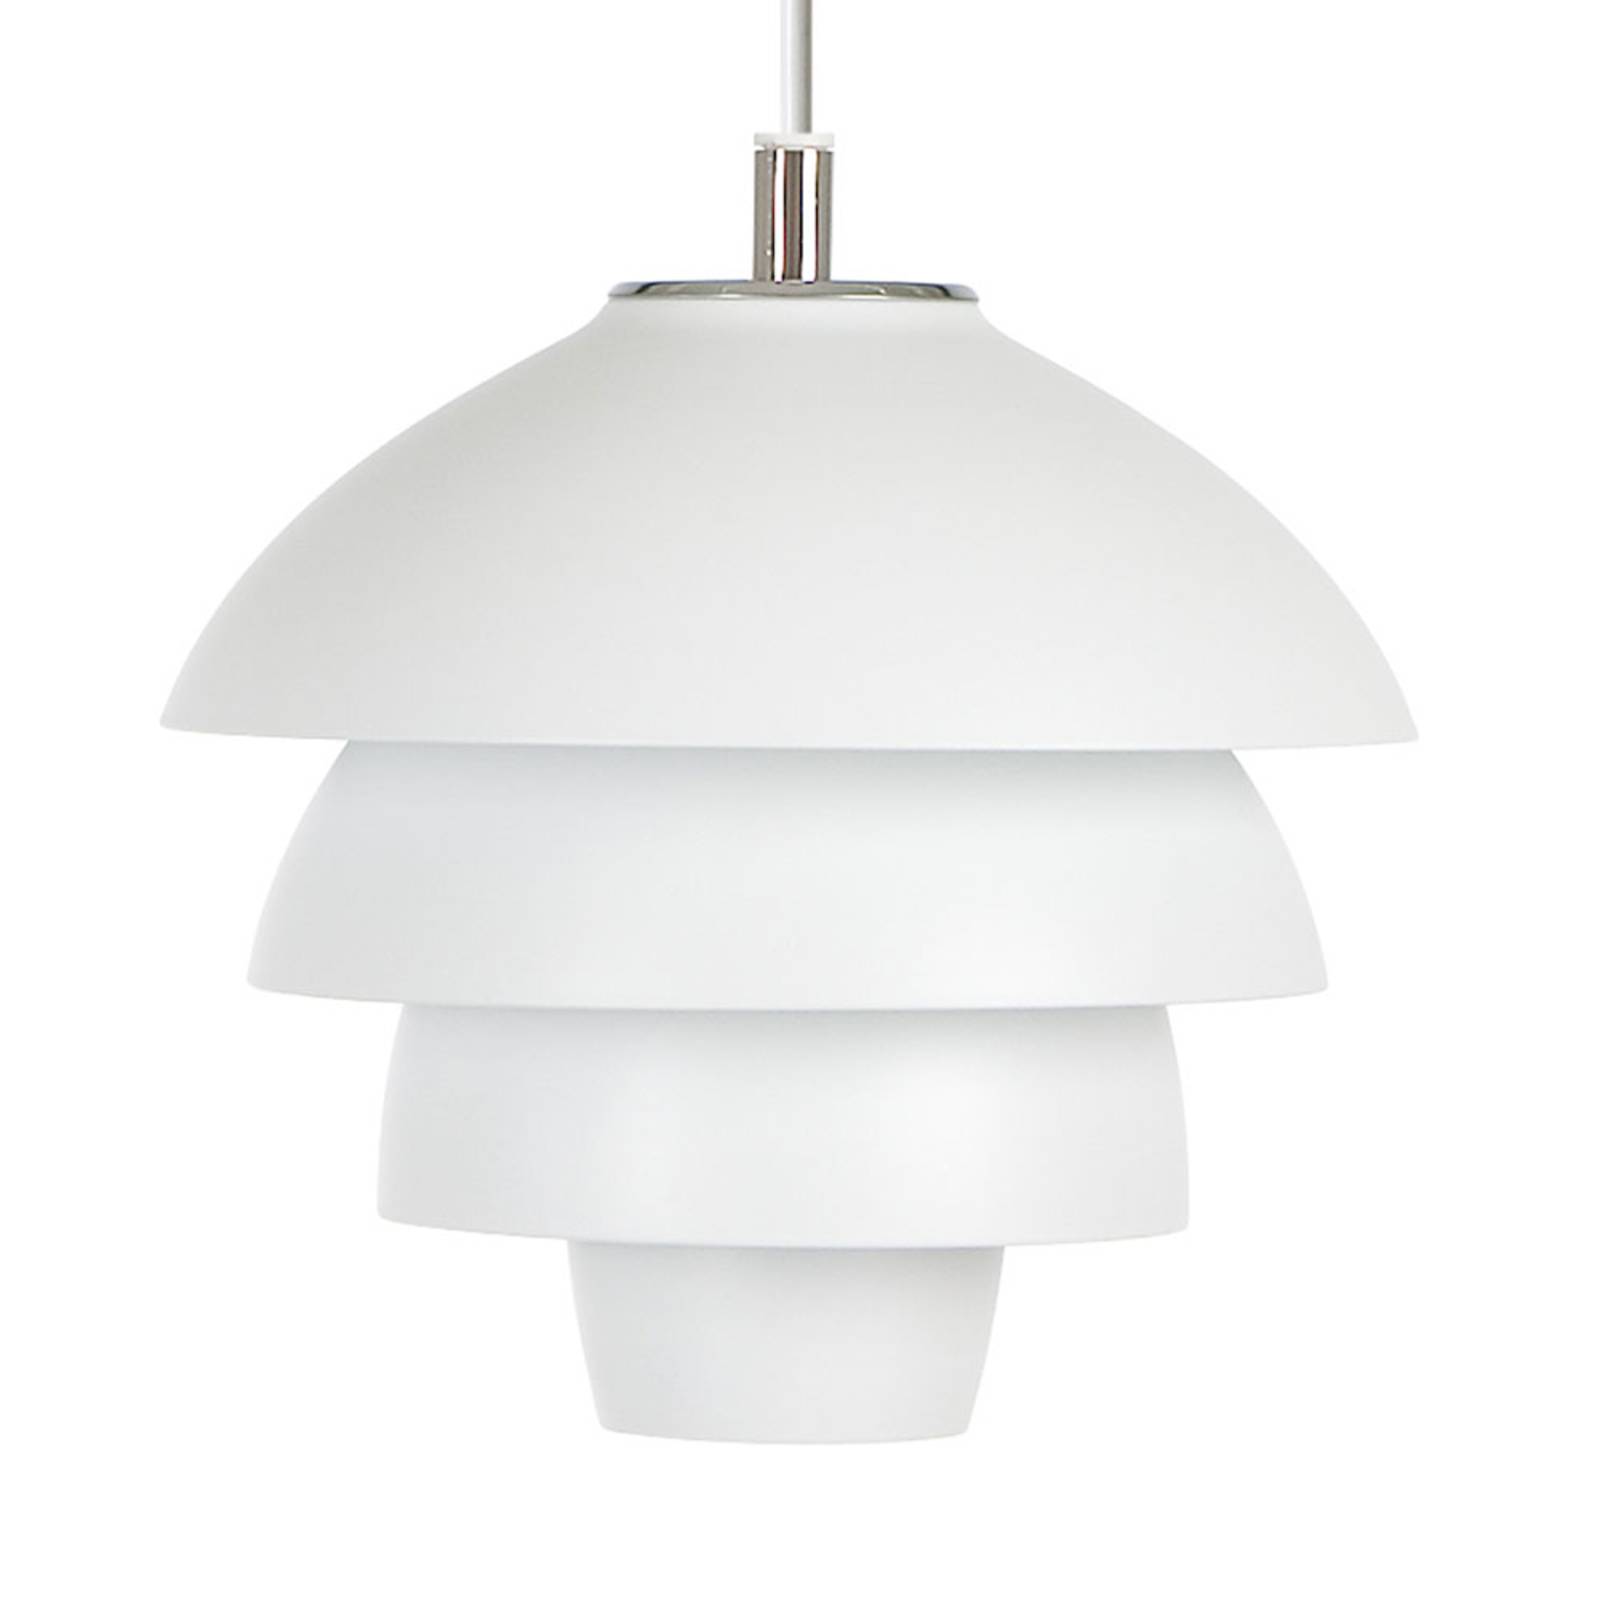 Hanglamp Valencia, Ø 18 cm, wit, met stekker